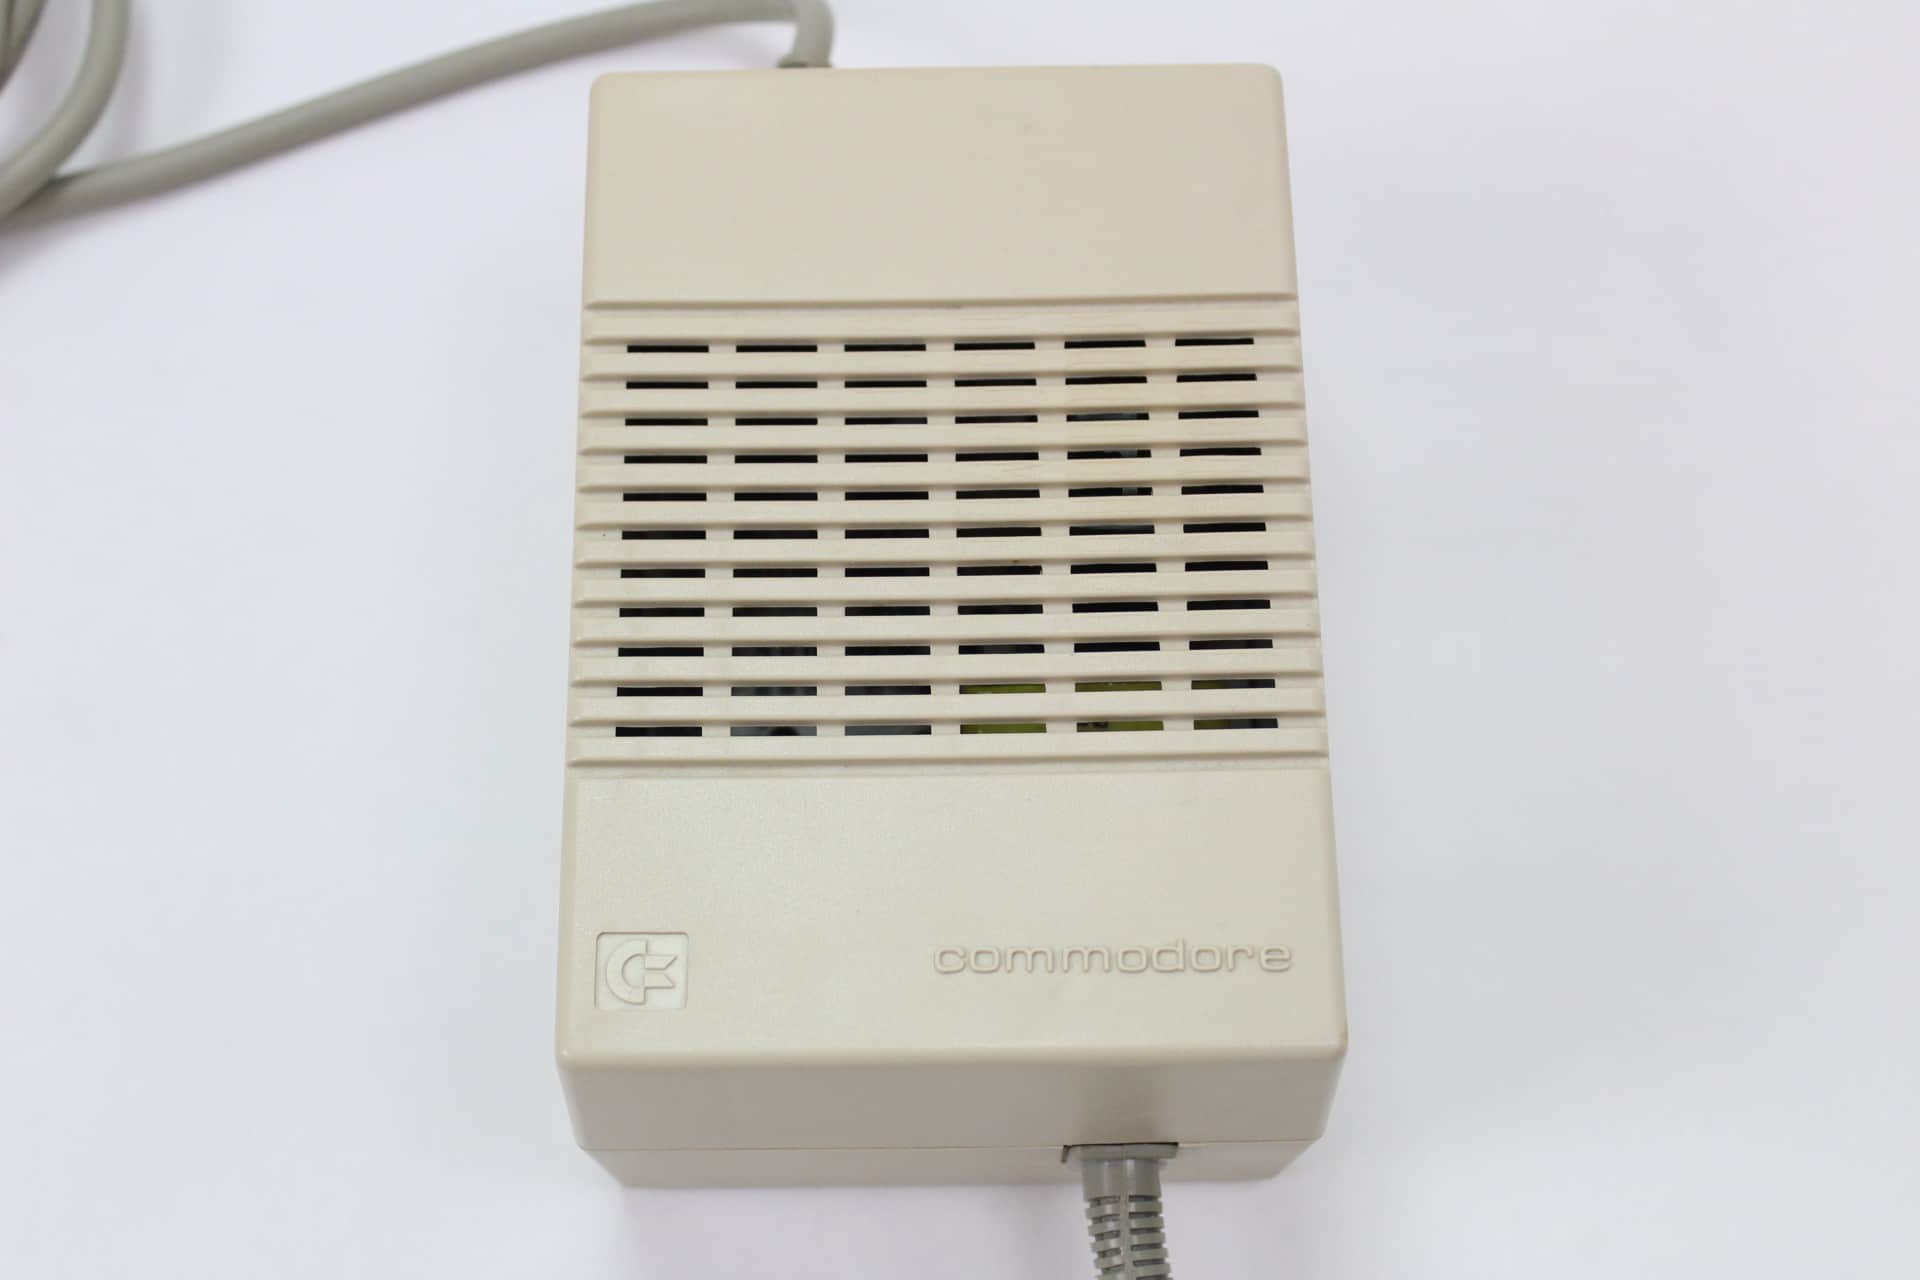 Commodore Amiga 1200 - zdroj